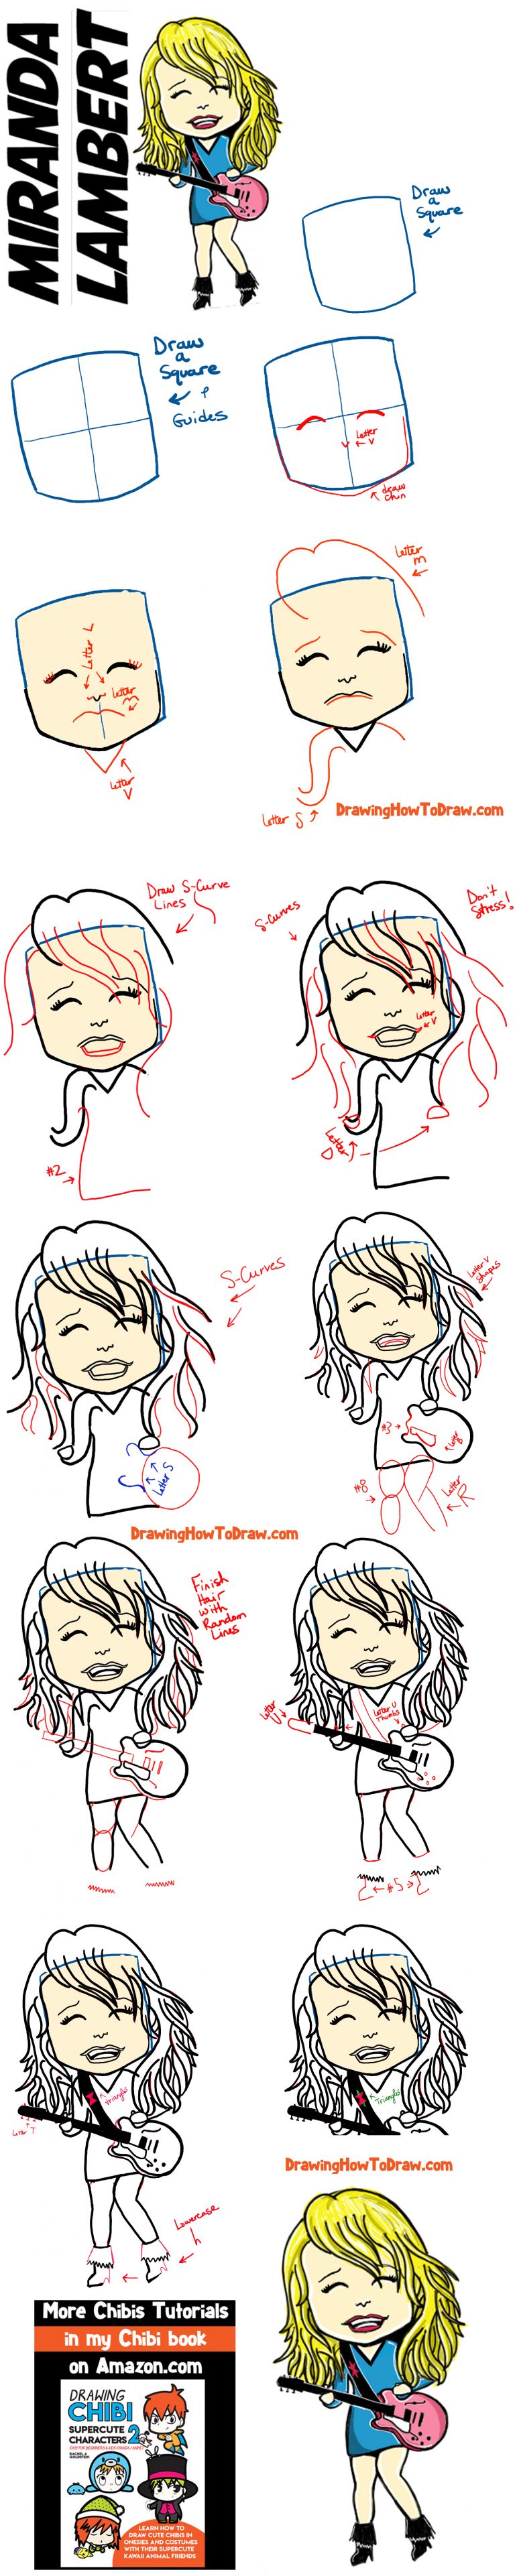 How to Draw Cartoon Chibi Miranda Lambert or Female Country Music ...